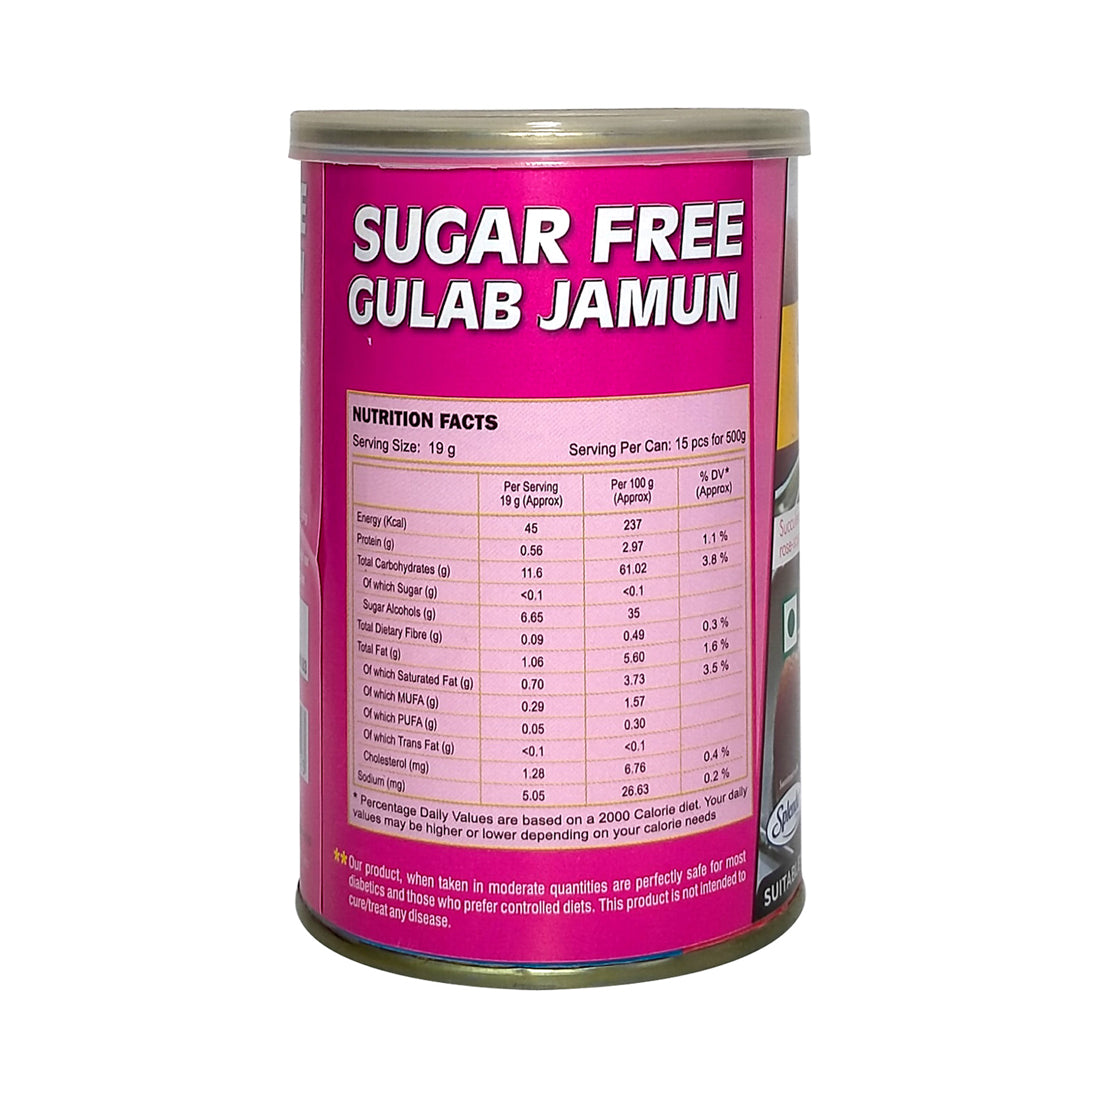 Sugar Free Gulab Jamun - Gulab Jamun Balls